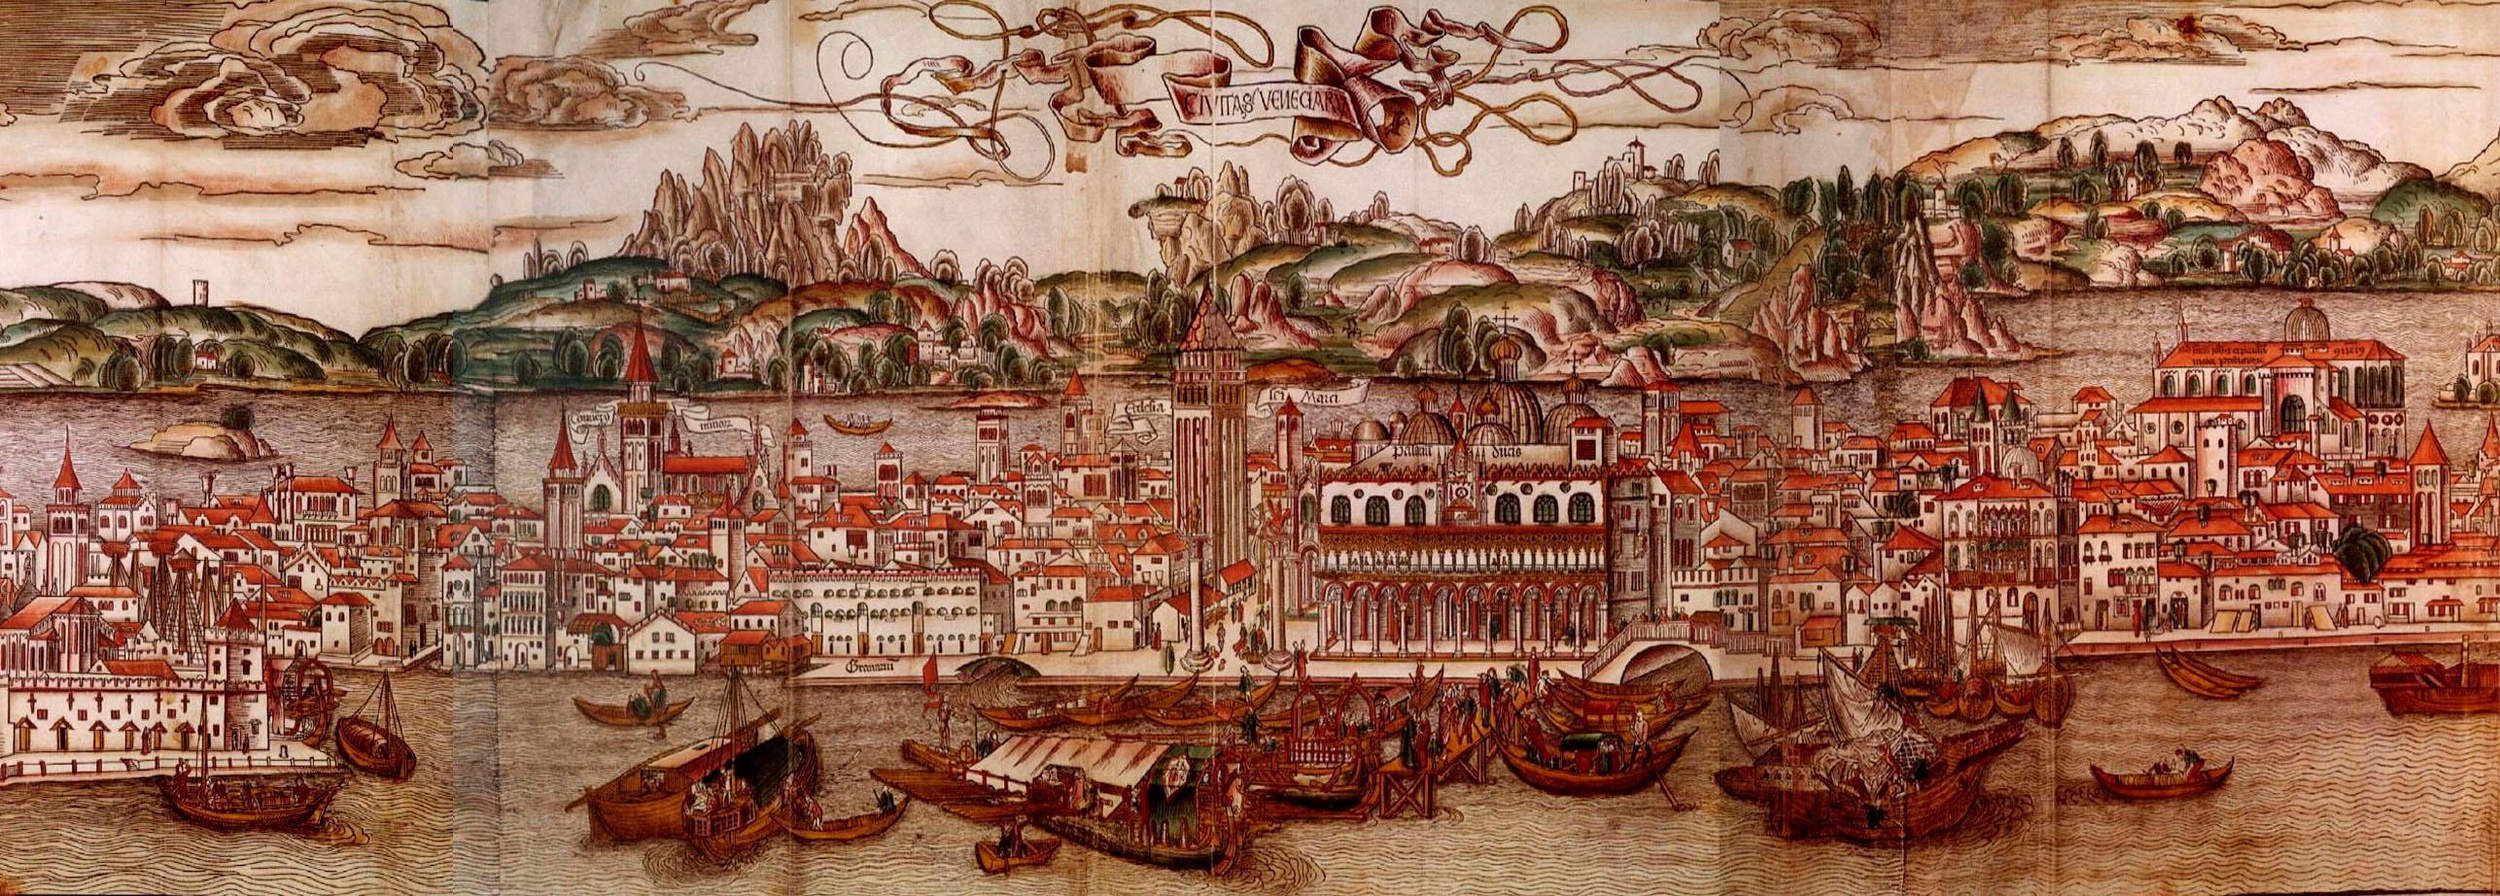 Venedig im 15. Jahrhundert mit Häusern, Palästen und Schiffen. Im Hintergrund befinden sich Inseln und grüne Hügel.  © Wikimedia